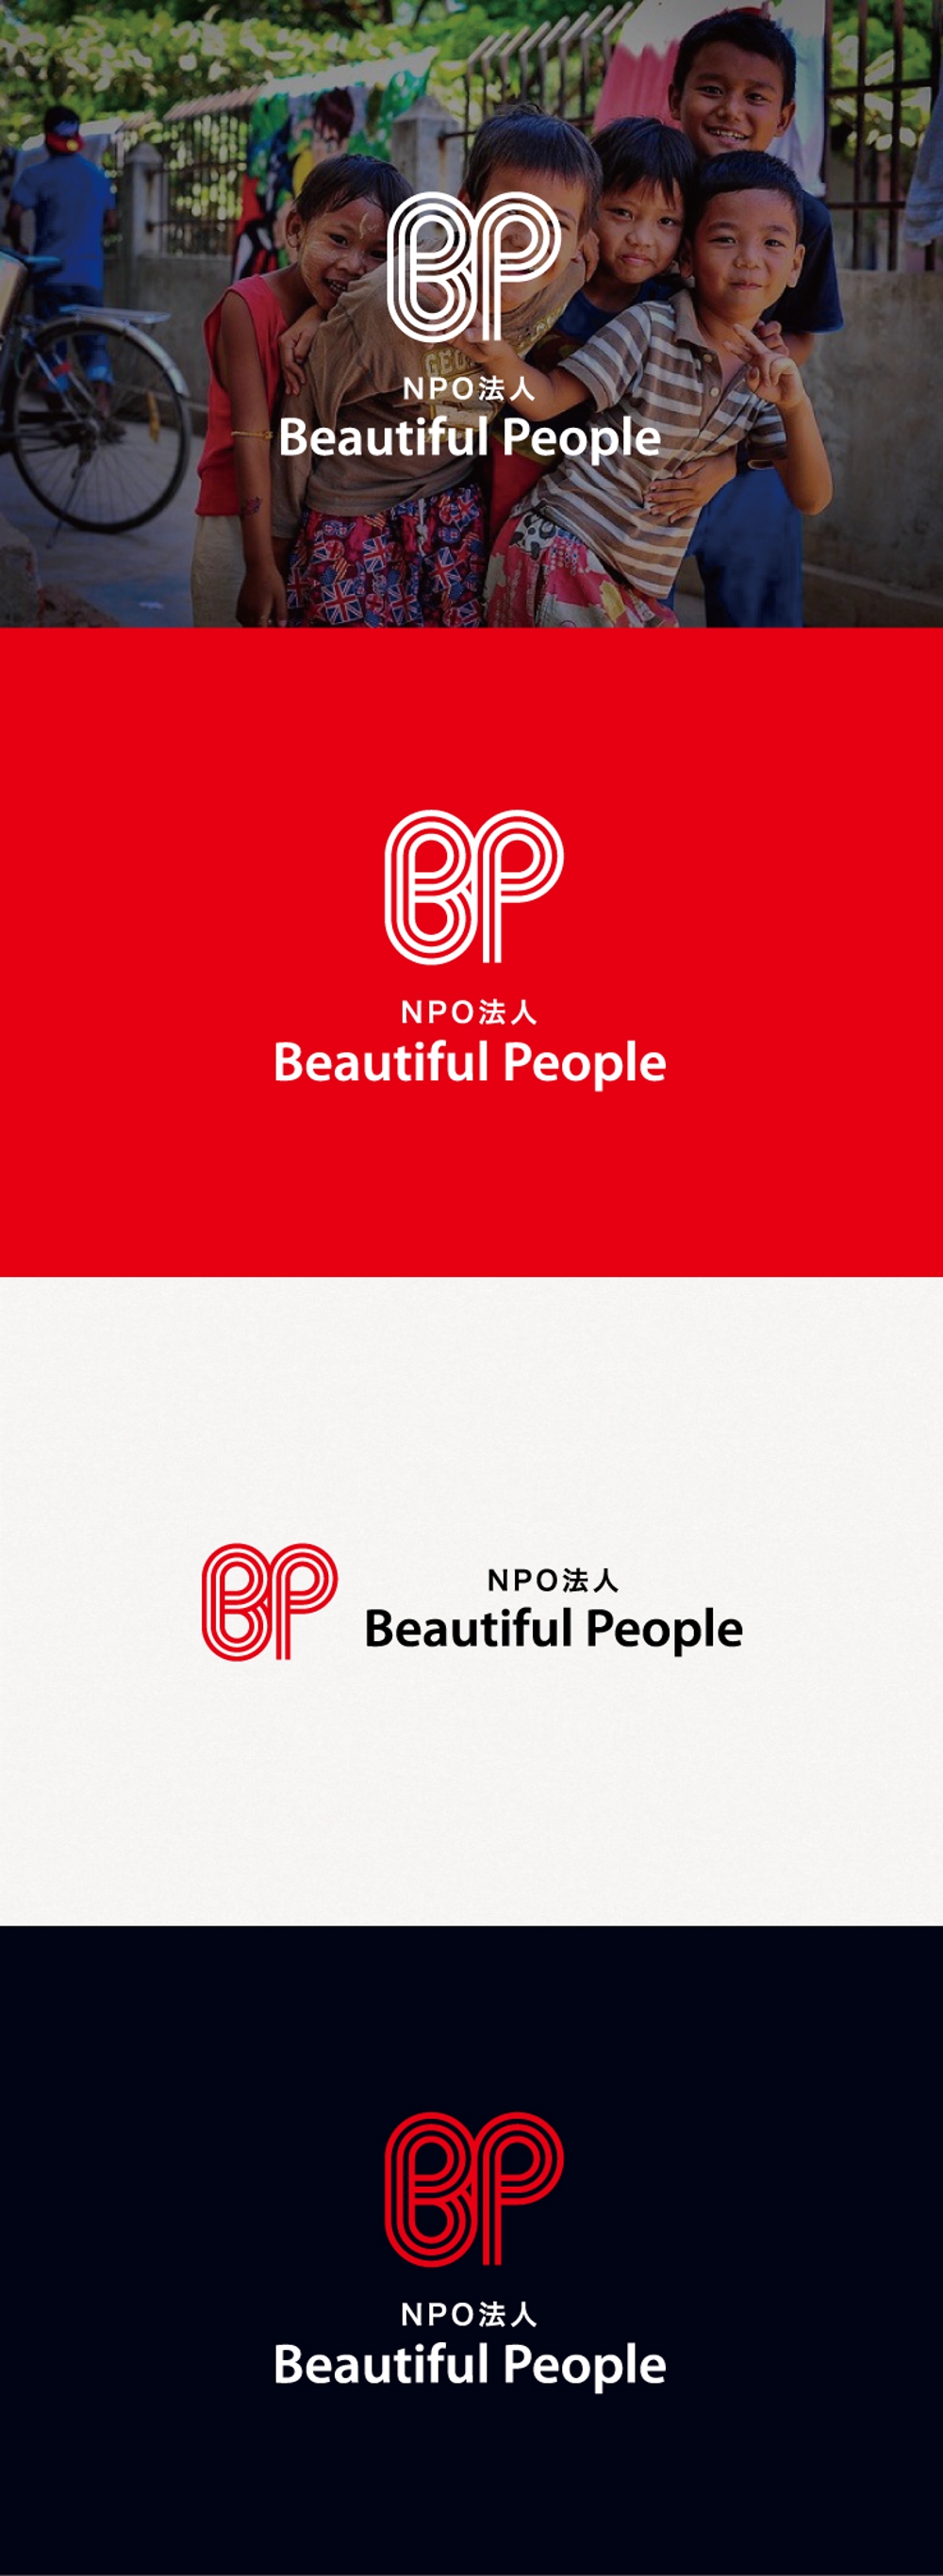 途上国の支援事業を行う「NPO法人 Beautiful People」のロゴ